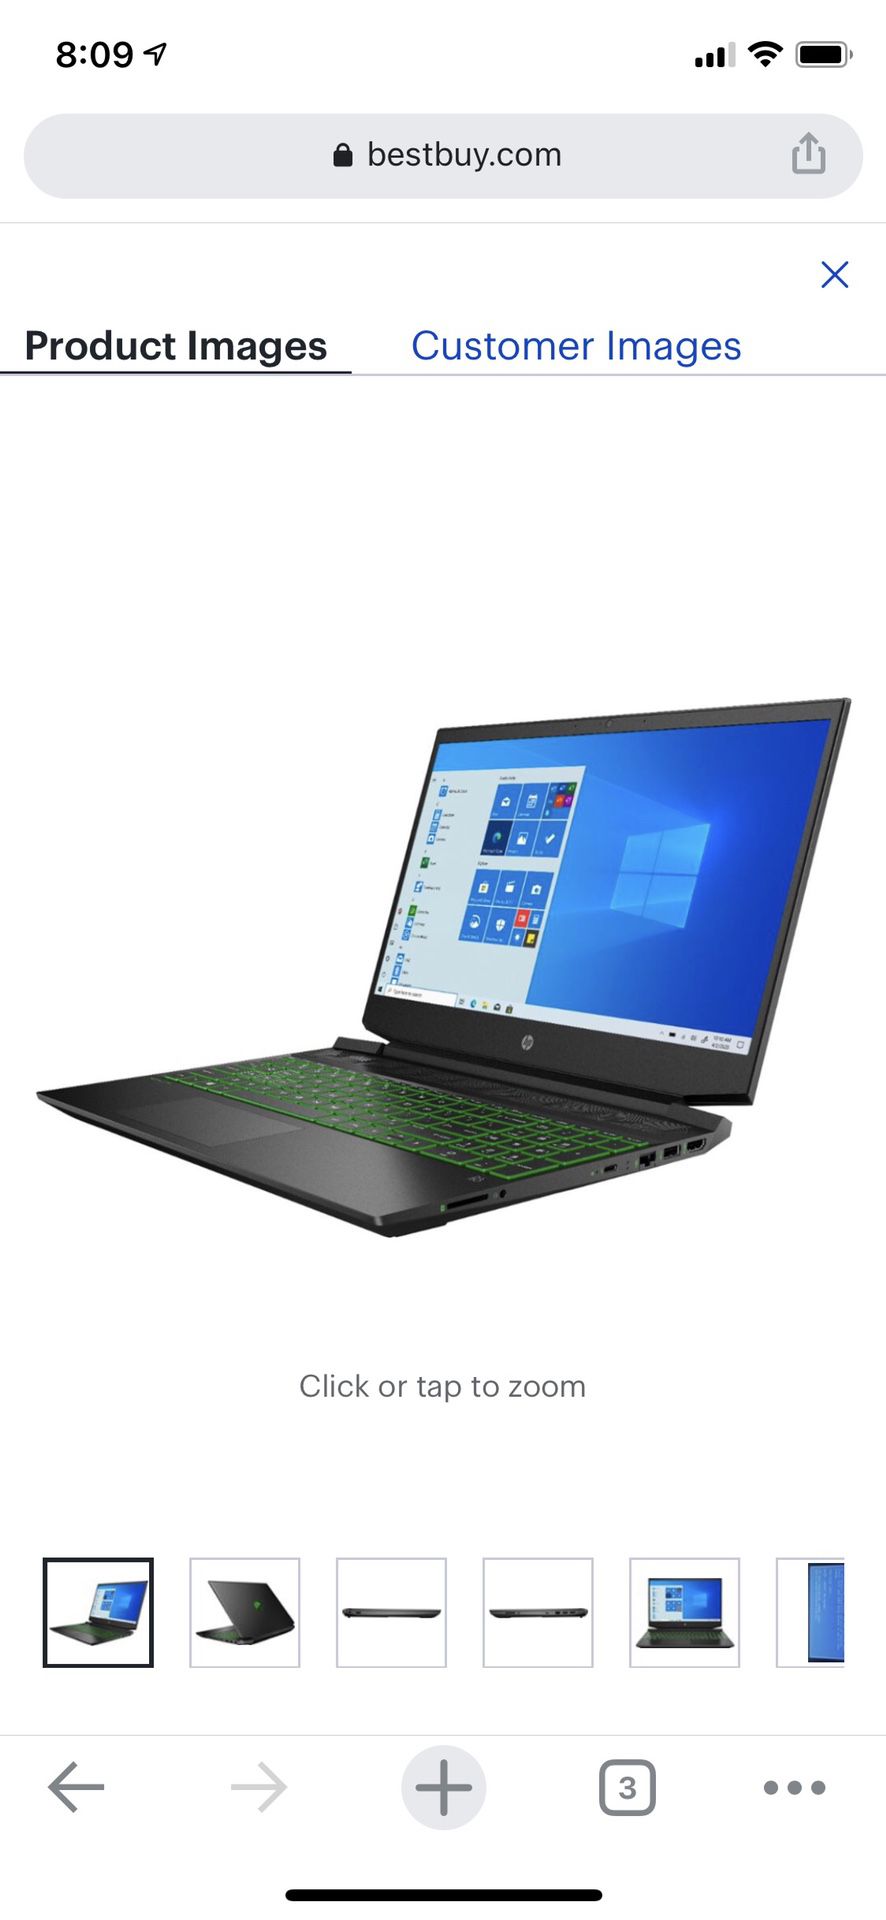 Gaming Laptop - HP Pavilion 15.6 w/ Upgraded Storage